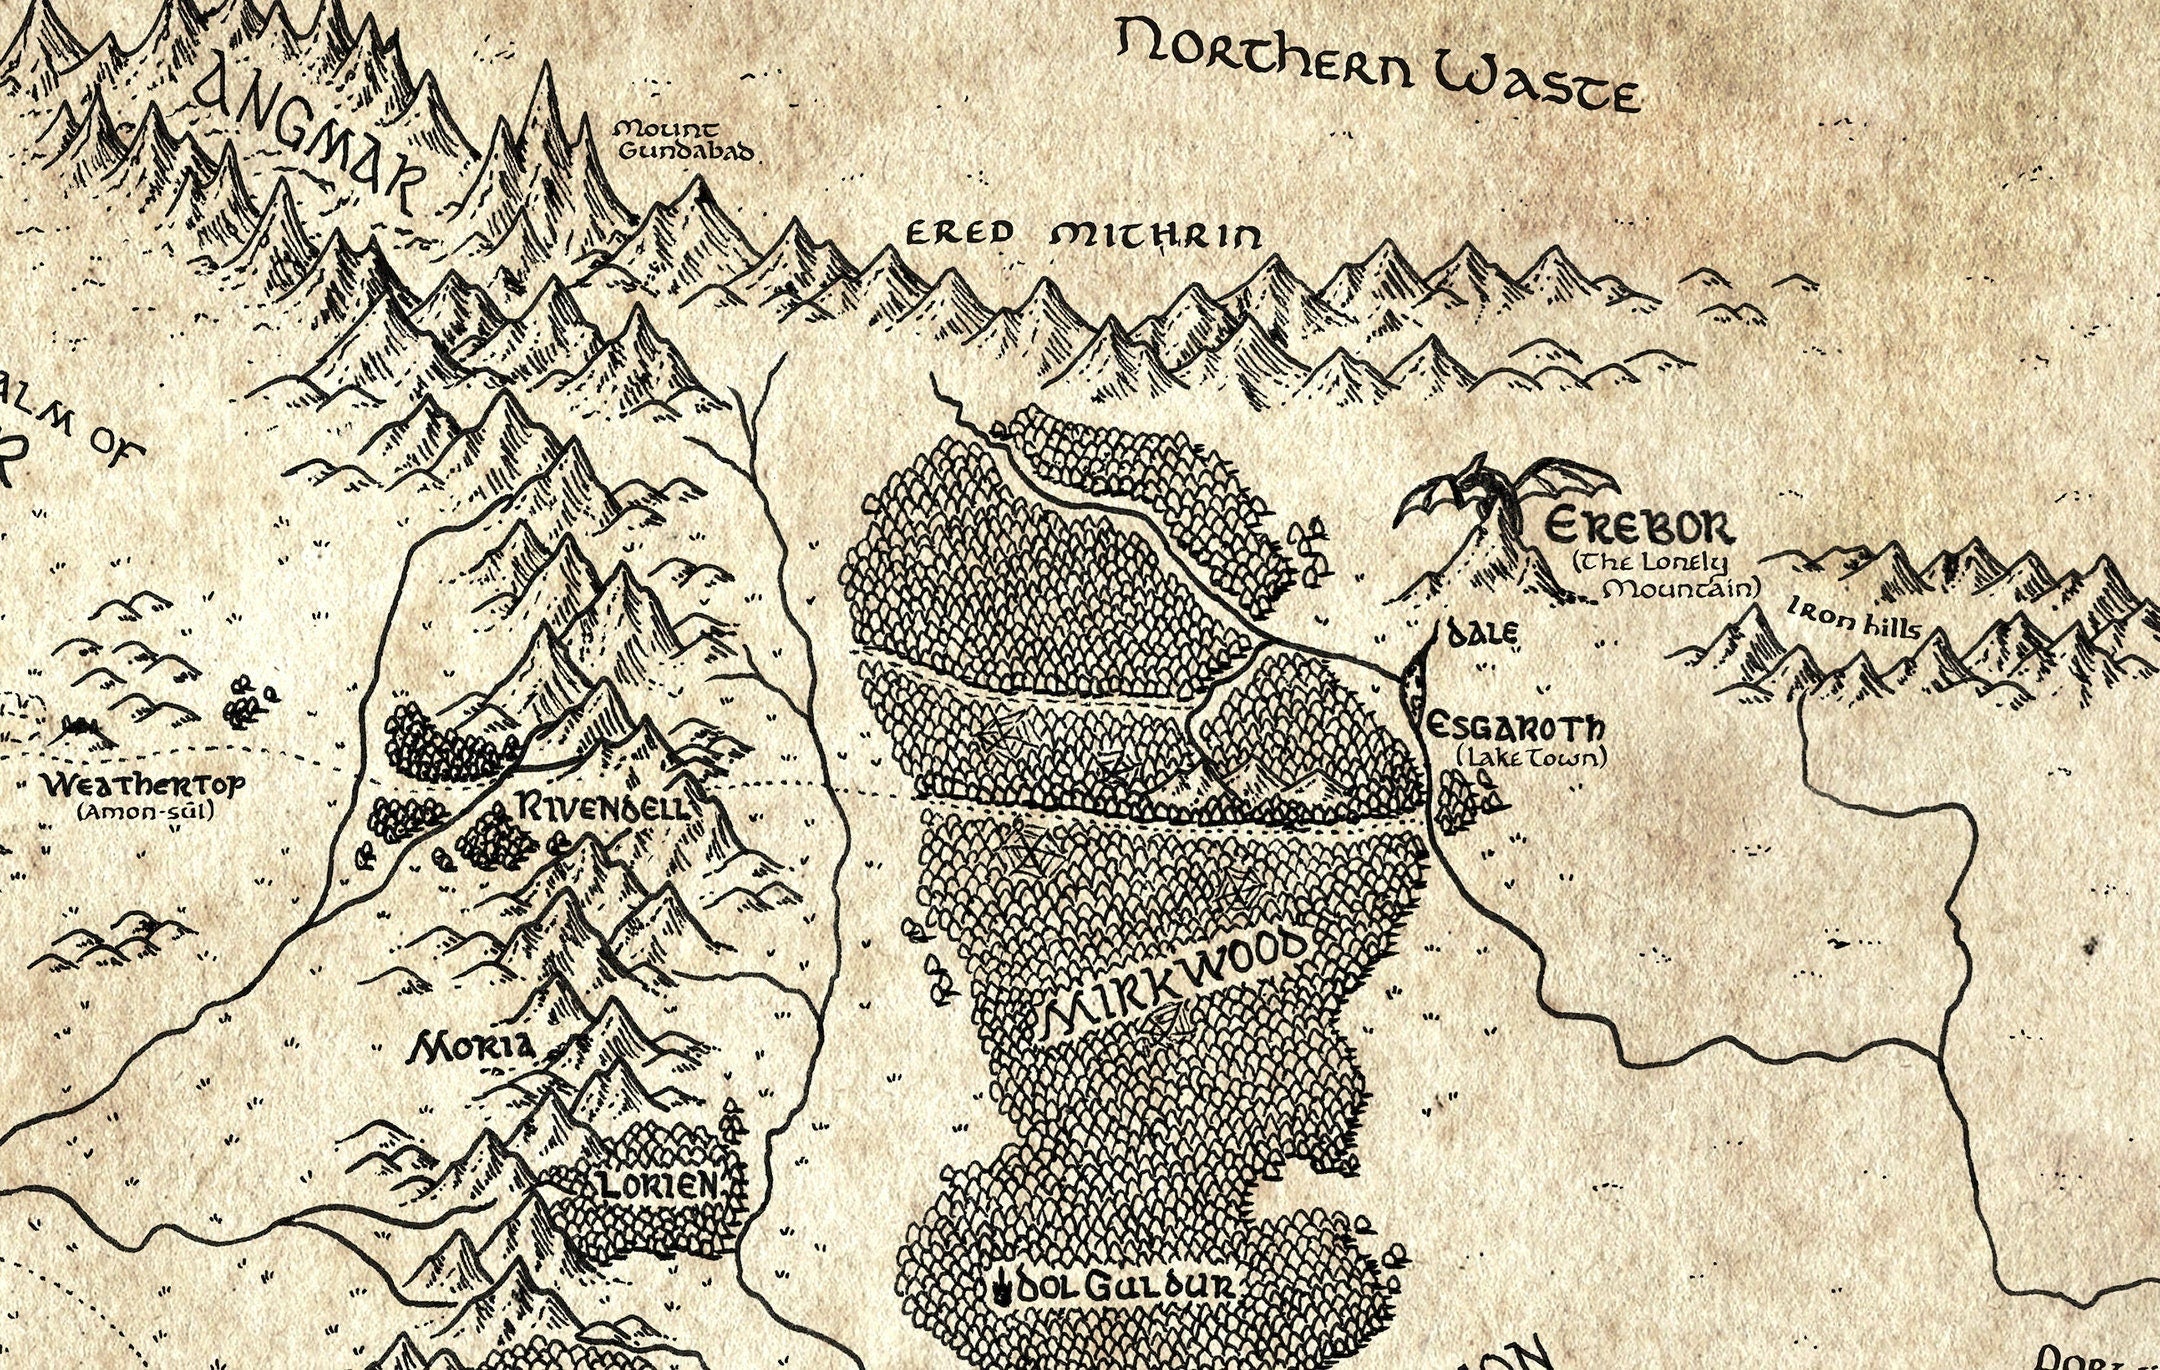 Beleriand  Silmarillion map, Tolkien, Middle earth